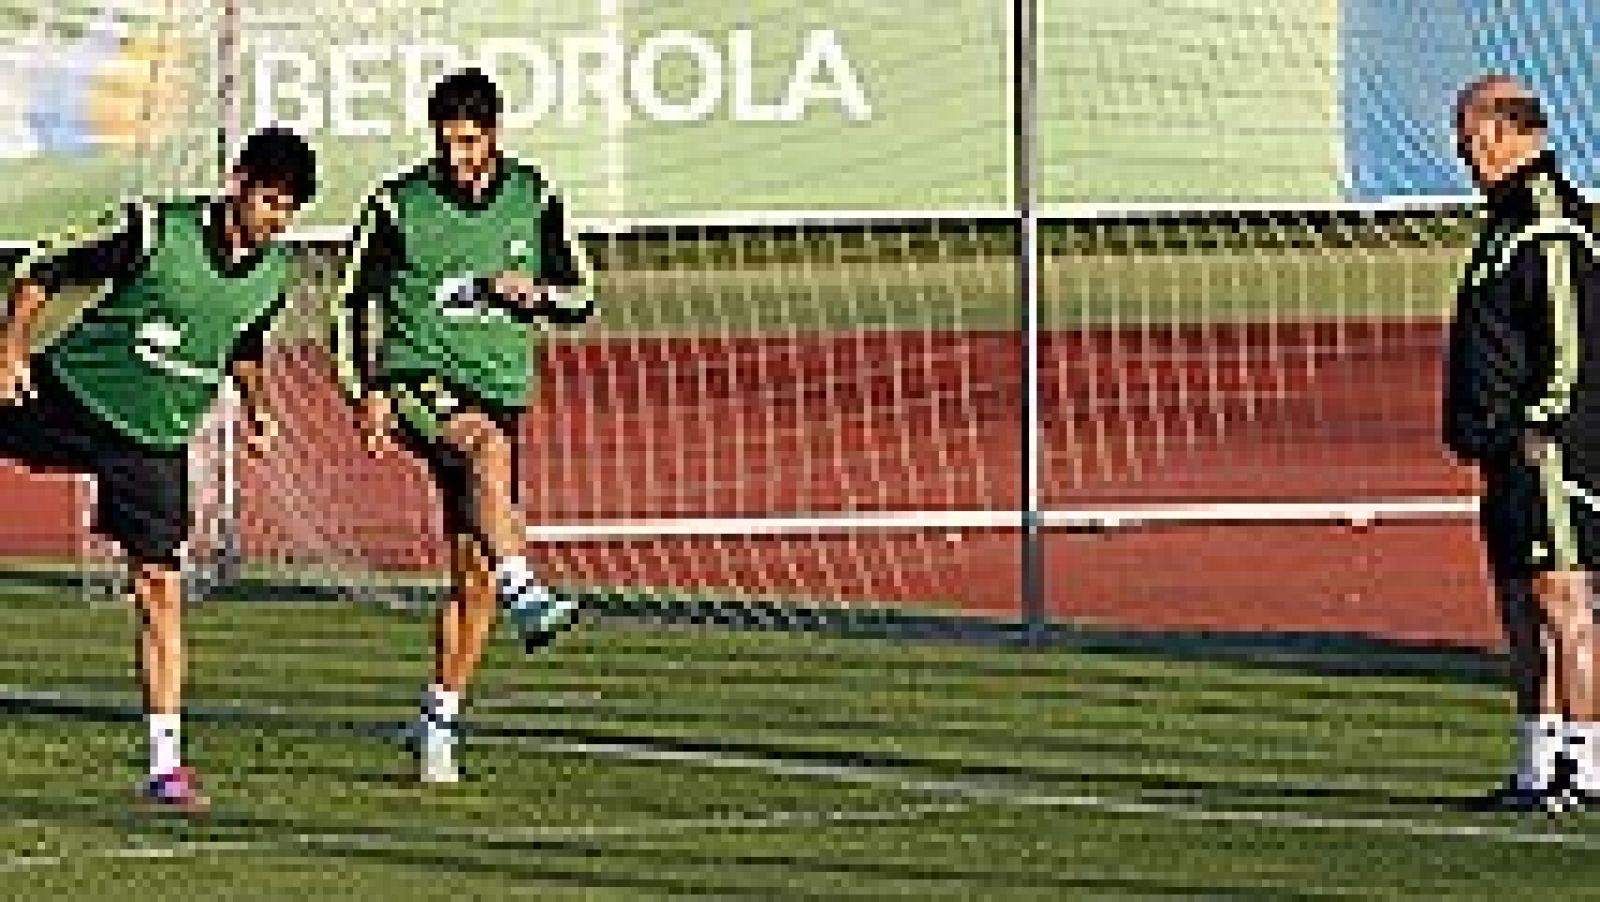 El seleccionador nacional de fútbol, Vicente del Bosque, realizó las primeras pruebas para el partido del jueves ante Eslovaquia, en una sesión vespertina de entrenamiento en la que juntó a todos los internacionales y probó con un ataque formado por 